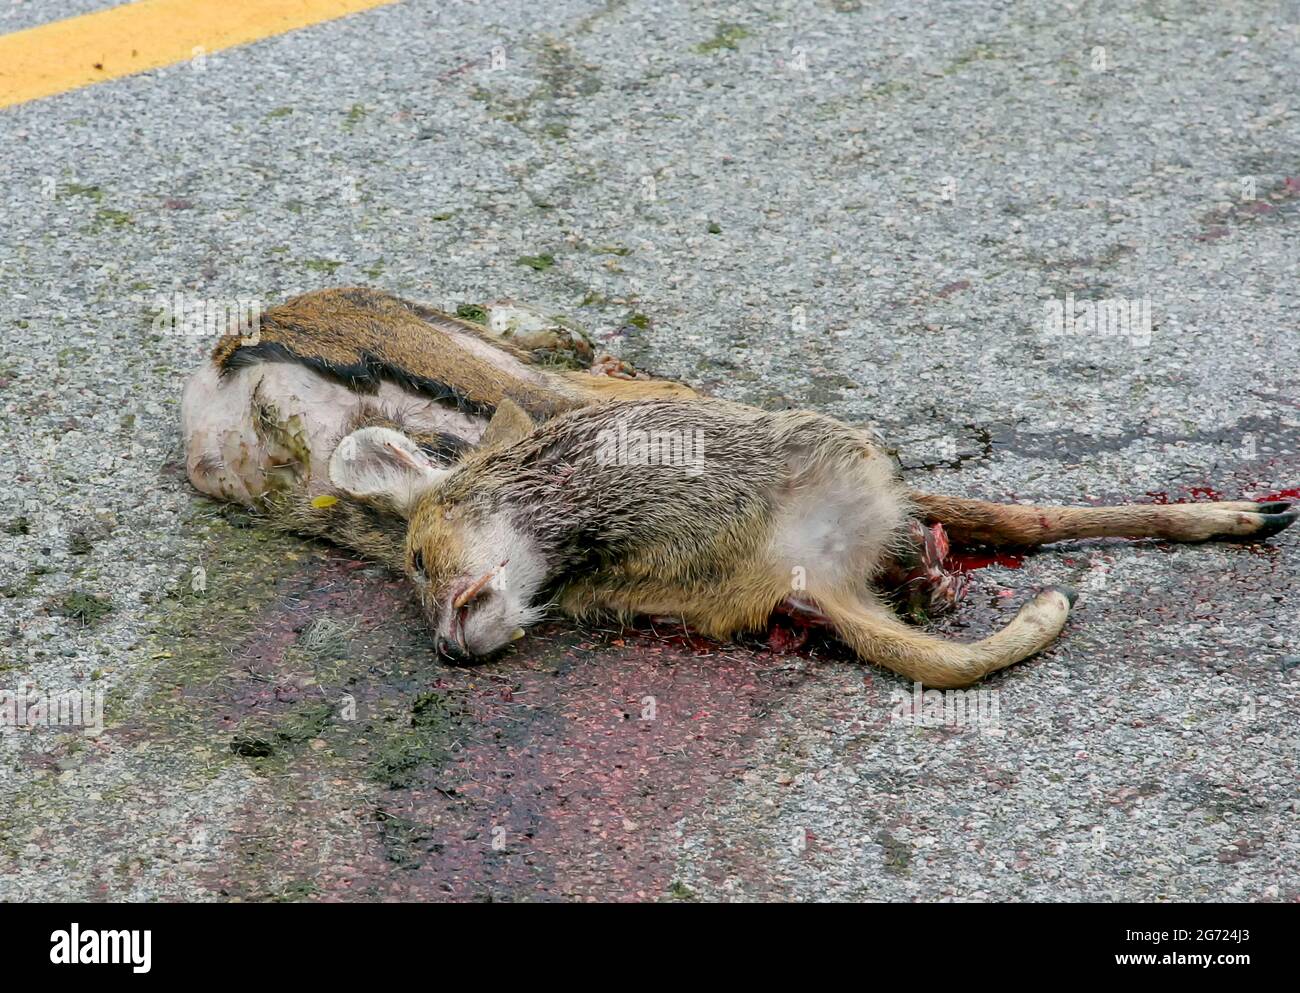 July 10, 2021-Wonju, South Korea-A Dead elk body lie on the road in Wonju, South Korea. Stock Photo